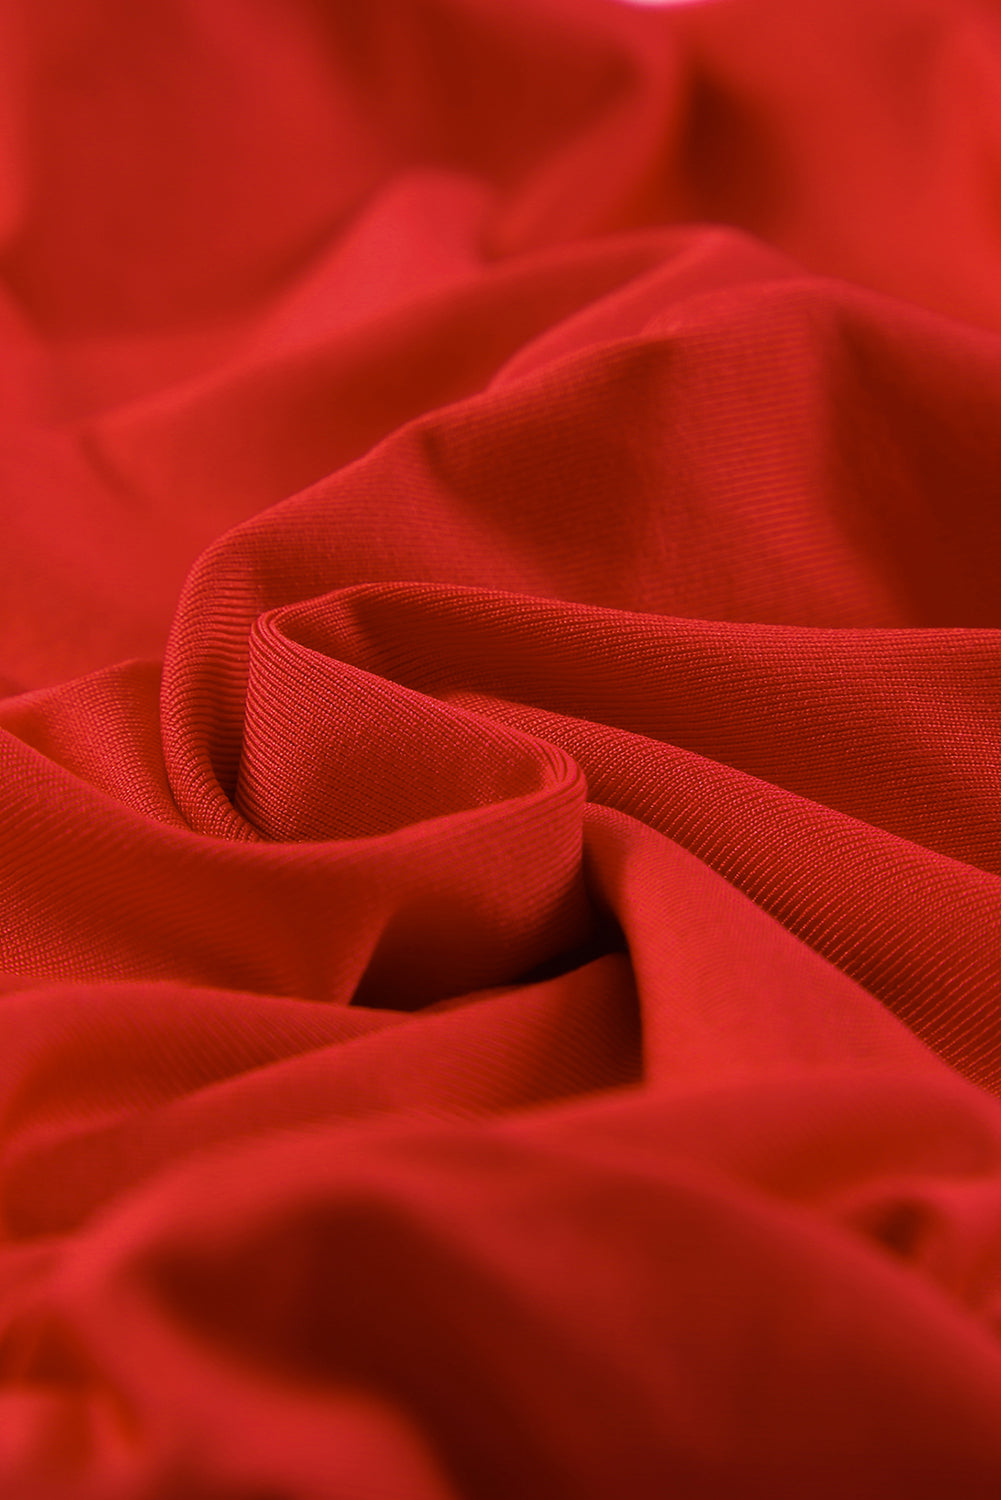 Vatreno crvena haljina s dugim rukavima i V izrezom s naborima uz objedinjavanje